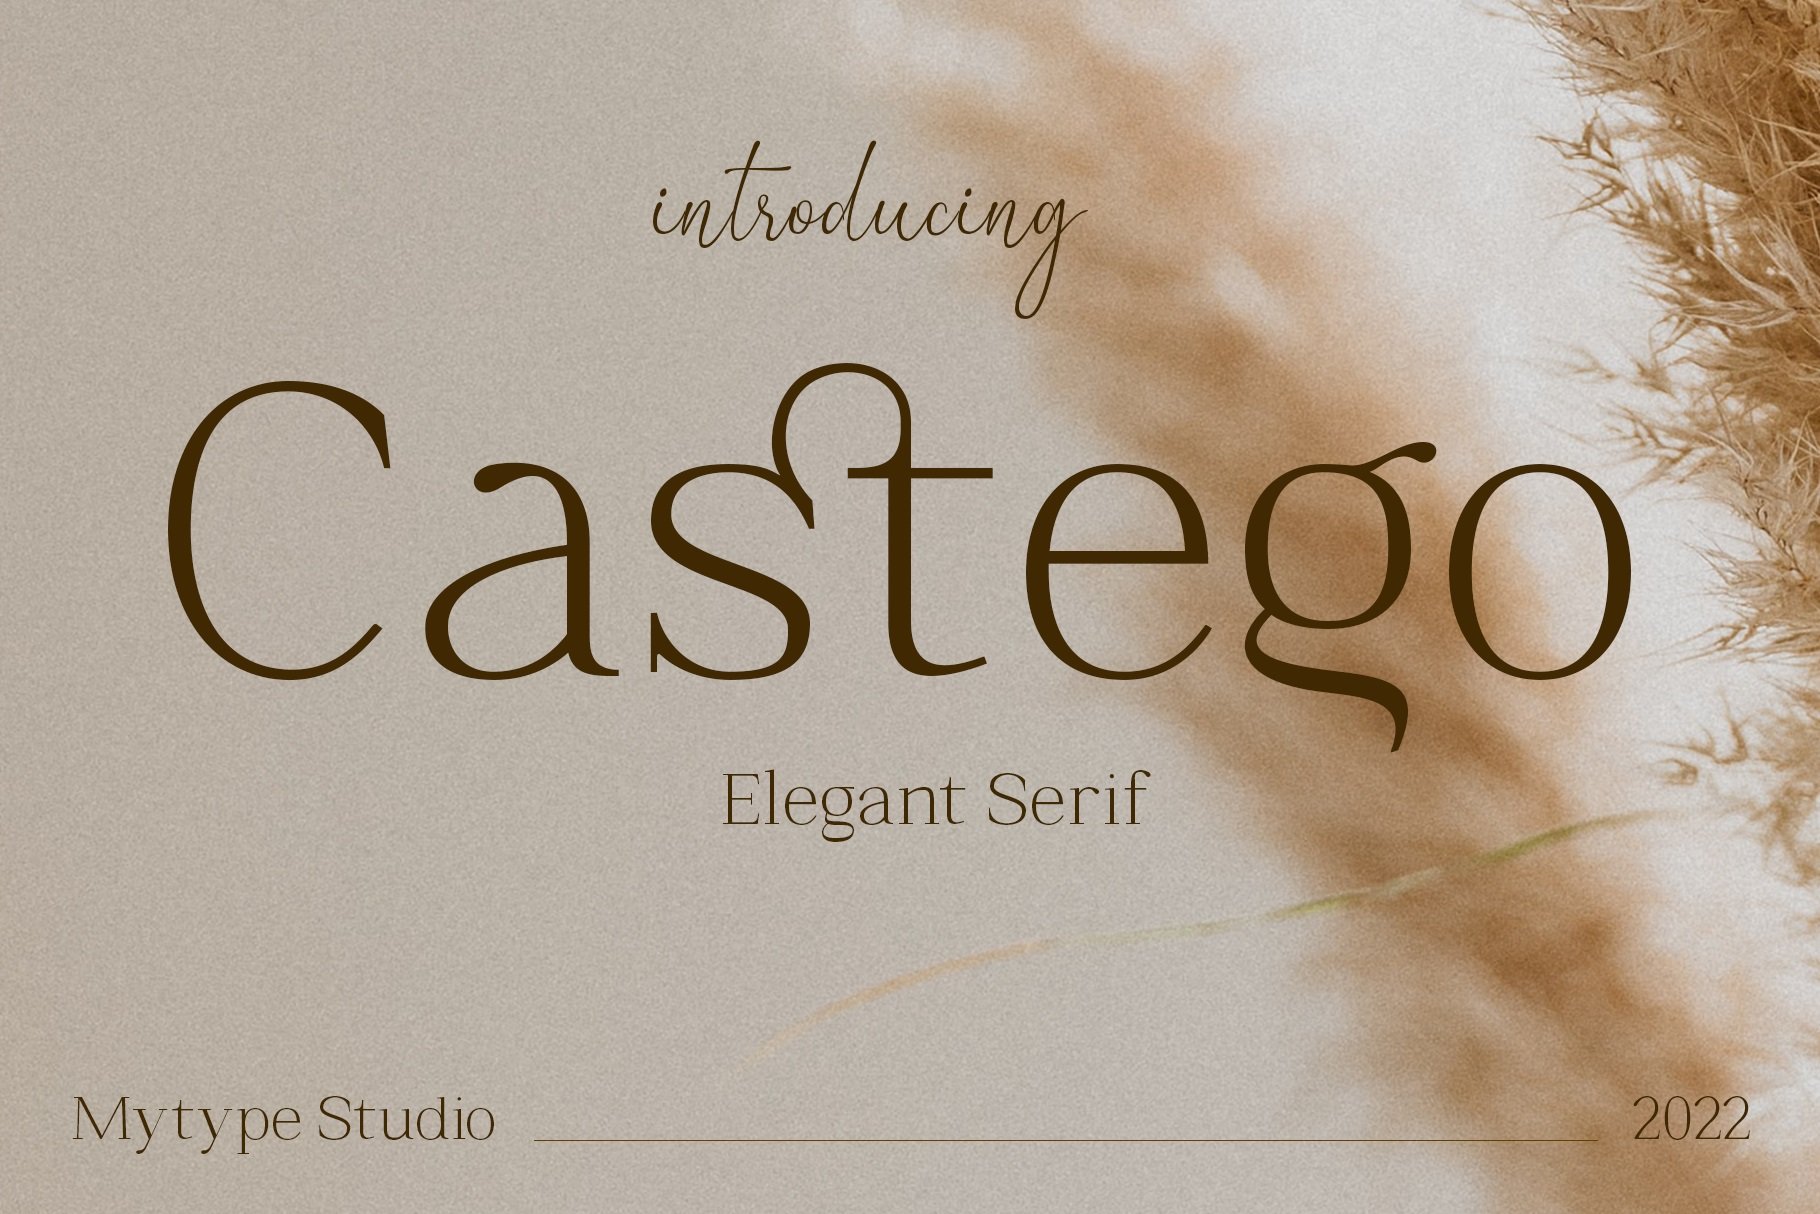 Castego - Elegant Serif cover image.